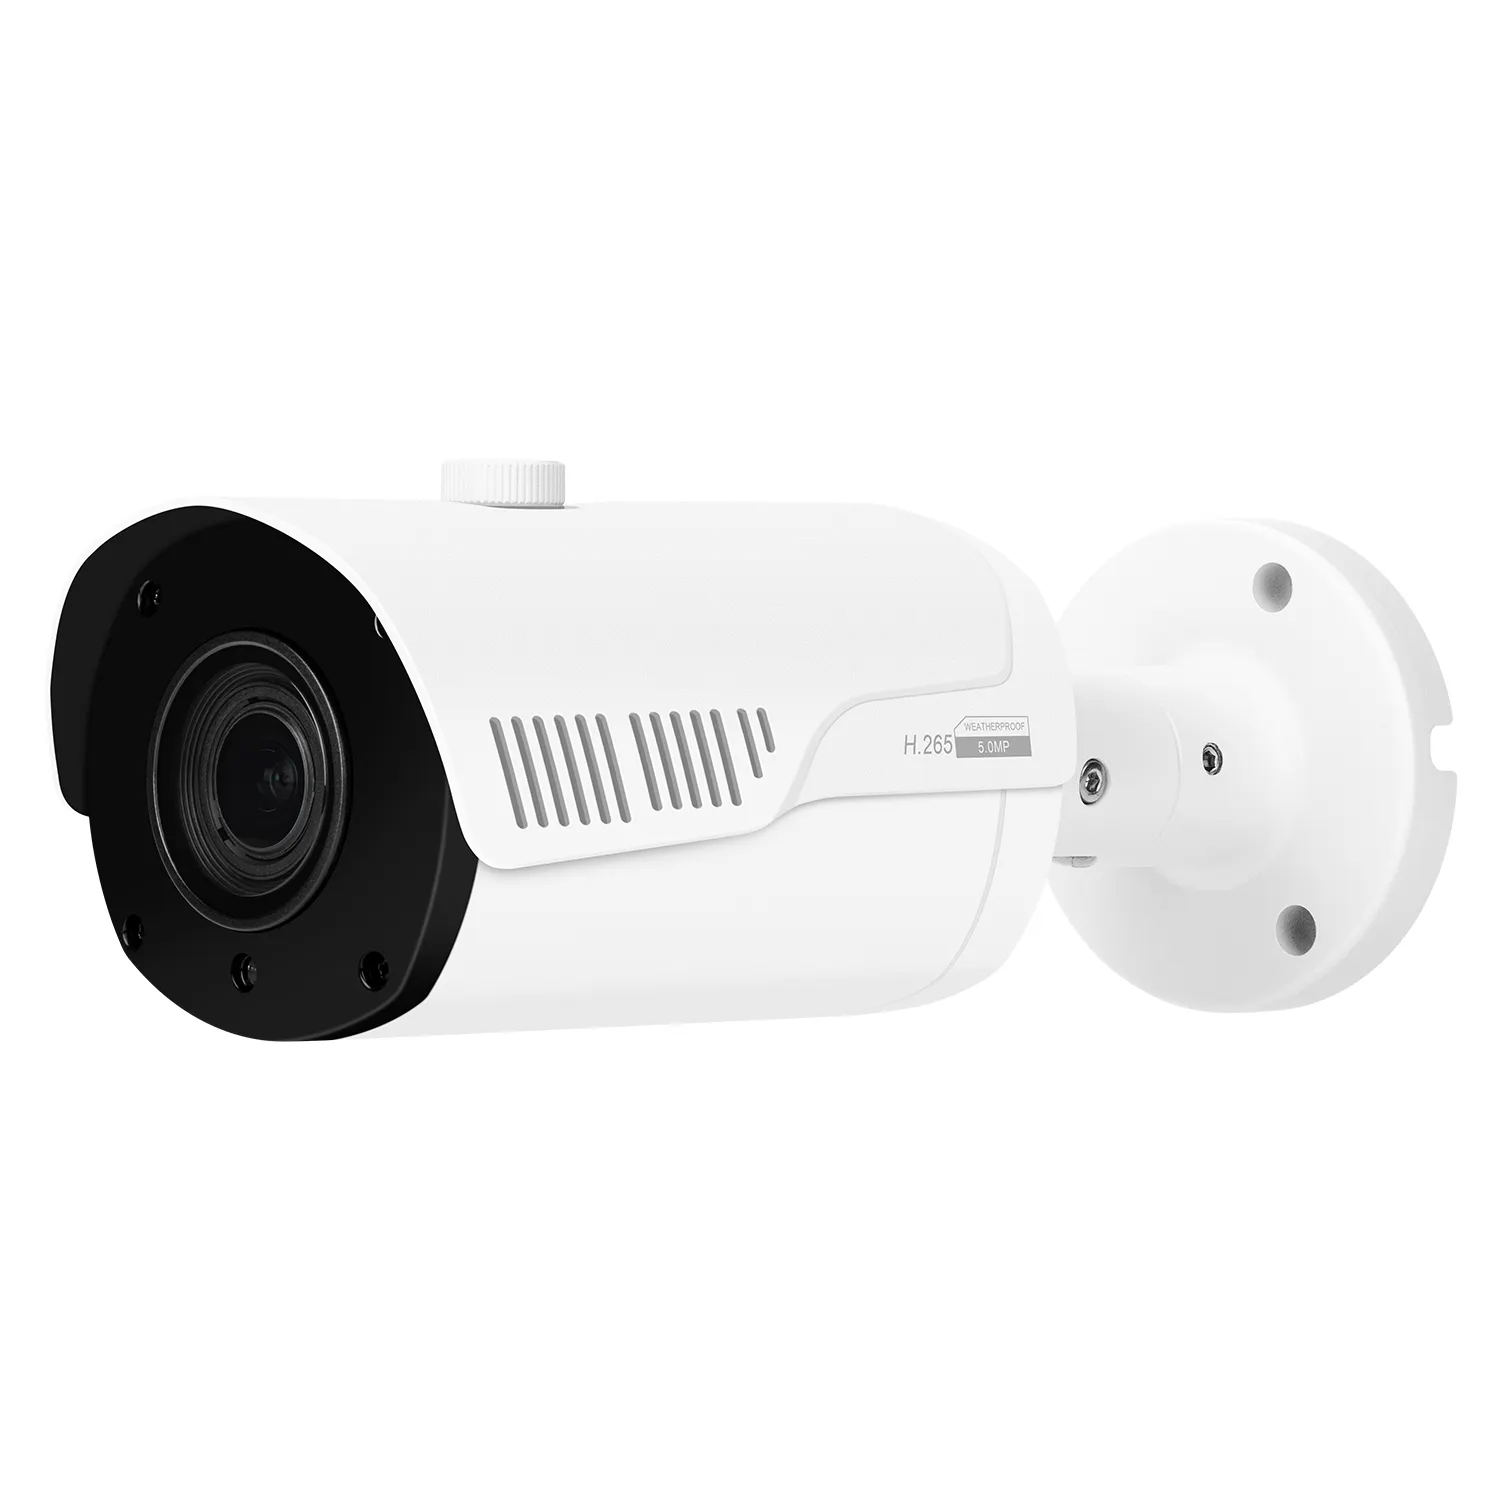 Sicurezza 8ch de sistema di sorveglianza video kit nvr cctv ip67 impermeabile di sorveglianza di ir di visione notturna della pallottola 5mp macchina fotografica del ip di poe